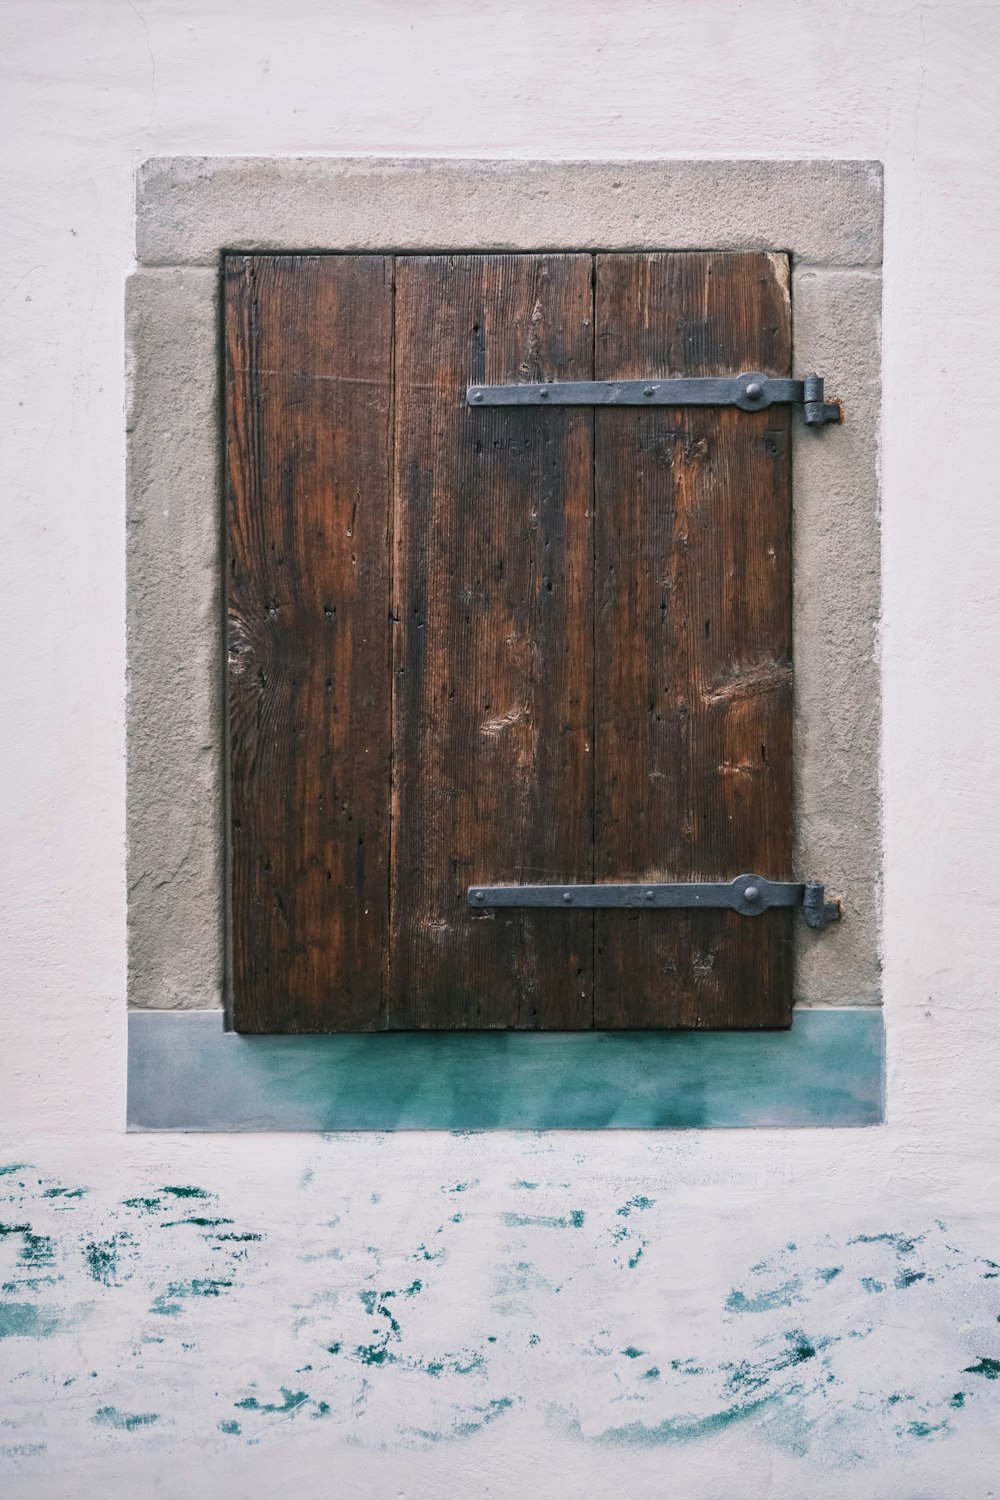 brown wooden door with black metal door lever